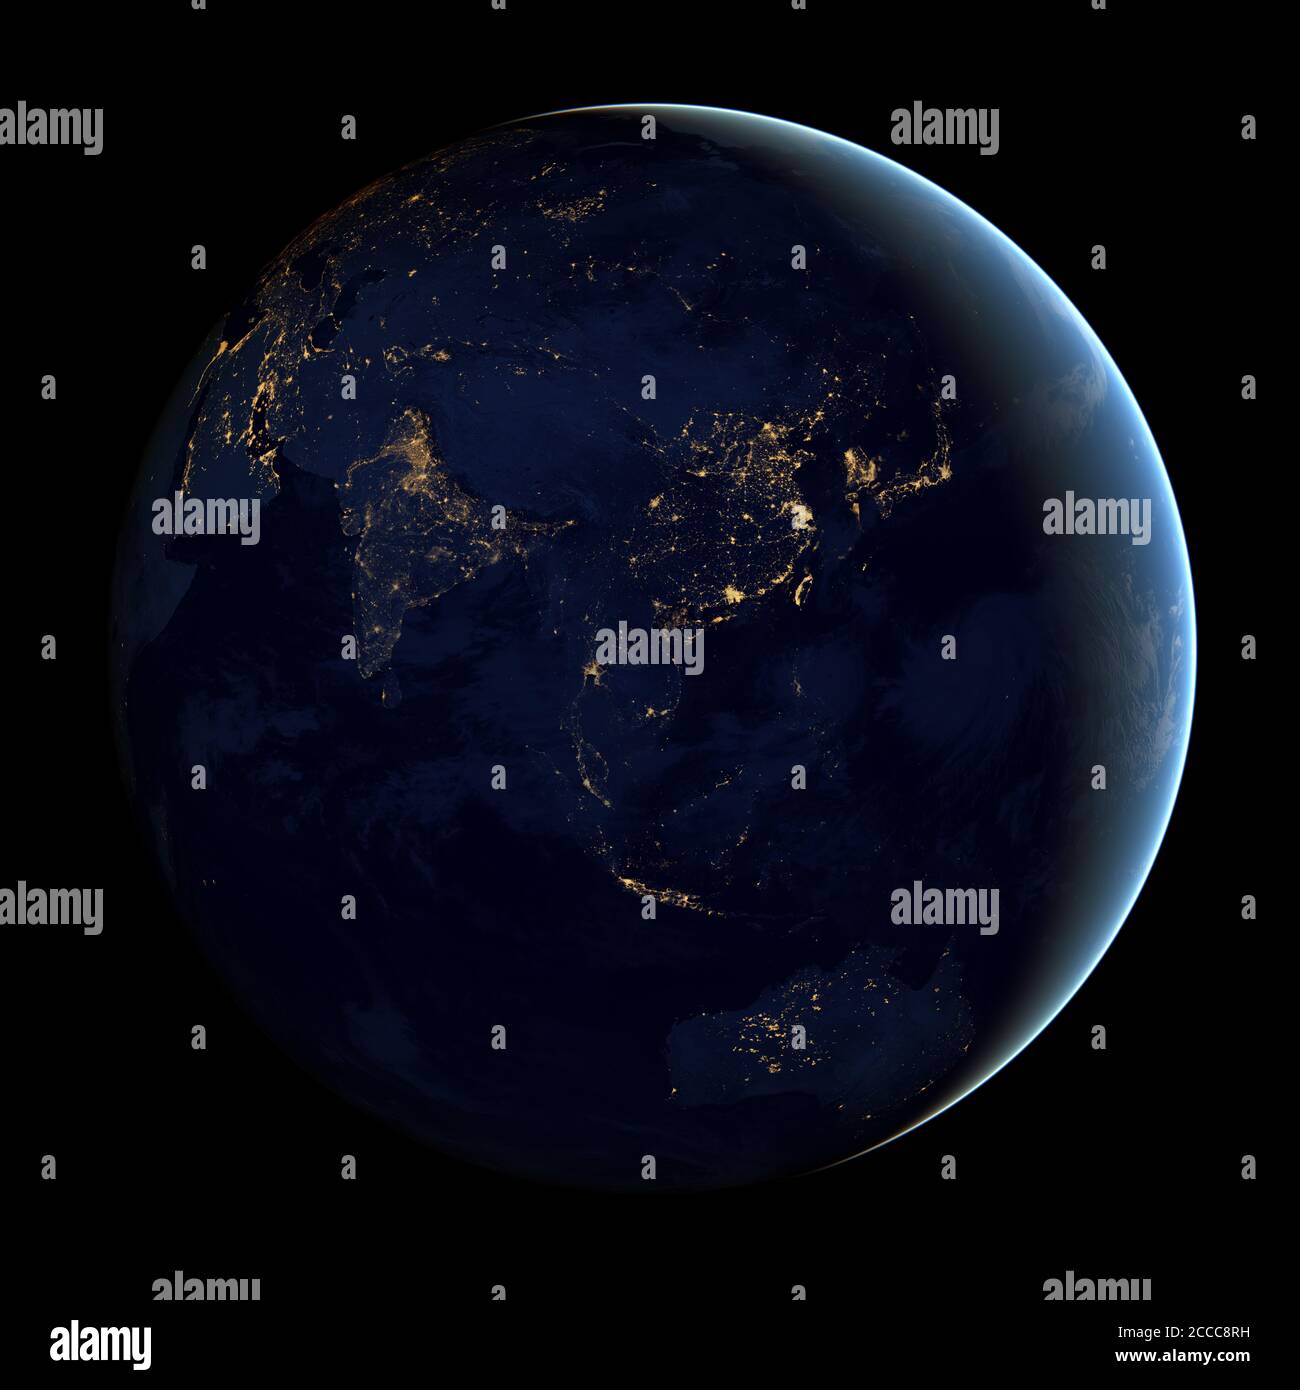 Esta imagen compuesta - hecha a partir de datos satelitales de la NASA - muestra el hemisferio extremo oriental de la Tierra por la noche - Foto: Geopix/NASA/Alamy Stock Photo Foto de stock